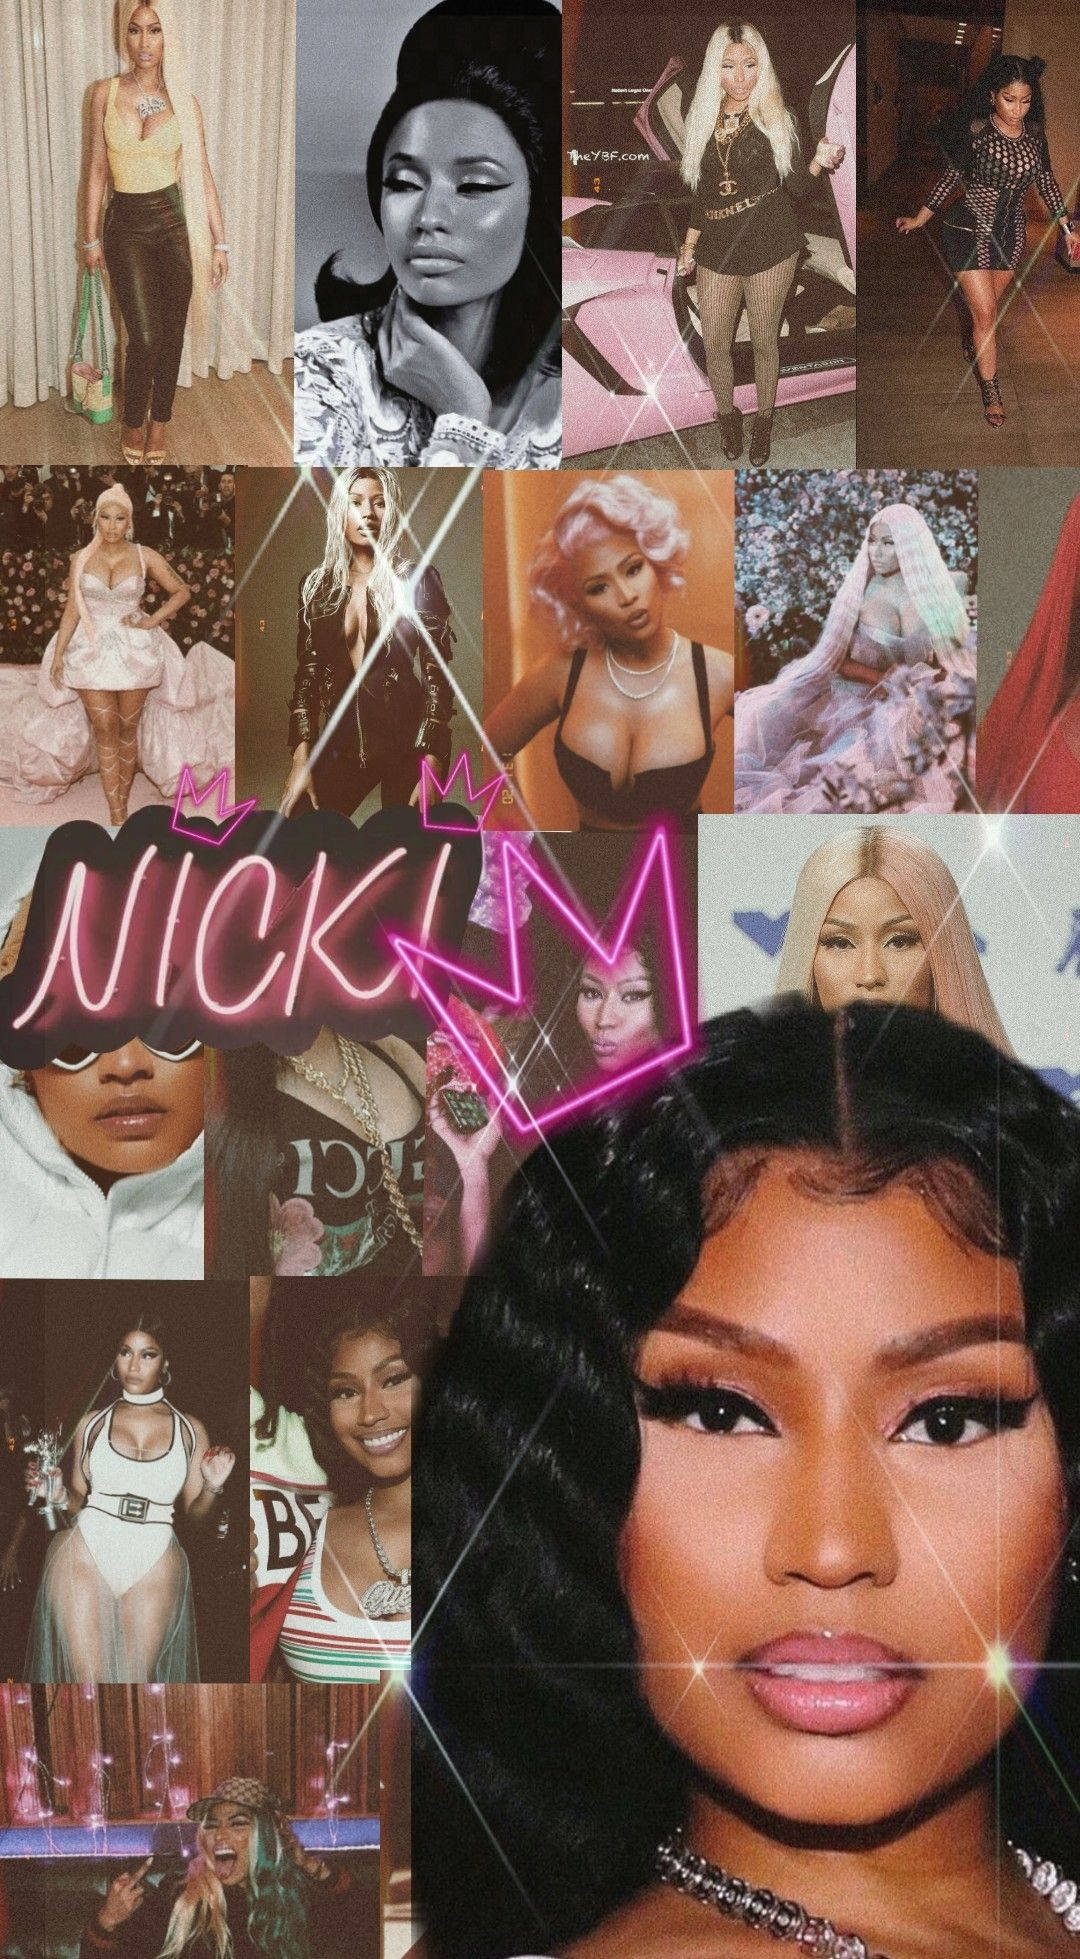 Nicki Minaj Wallpapers